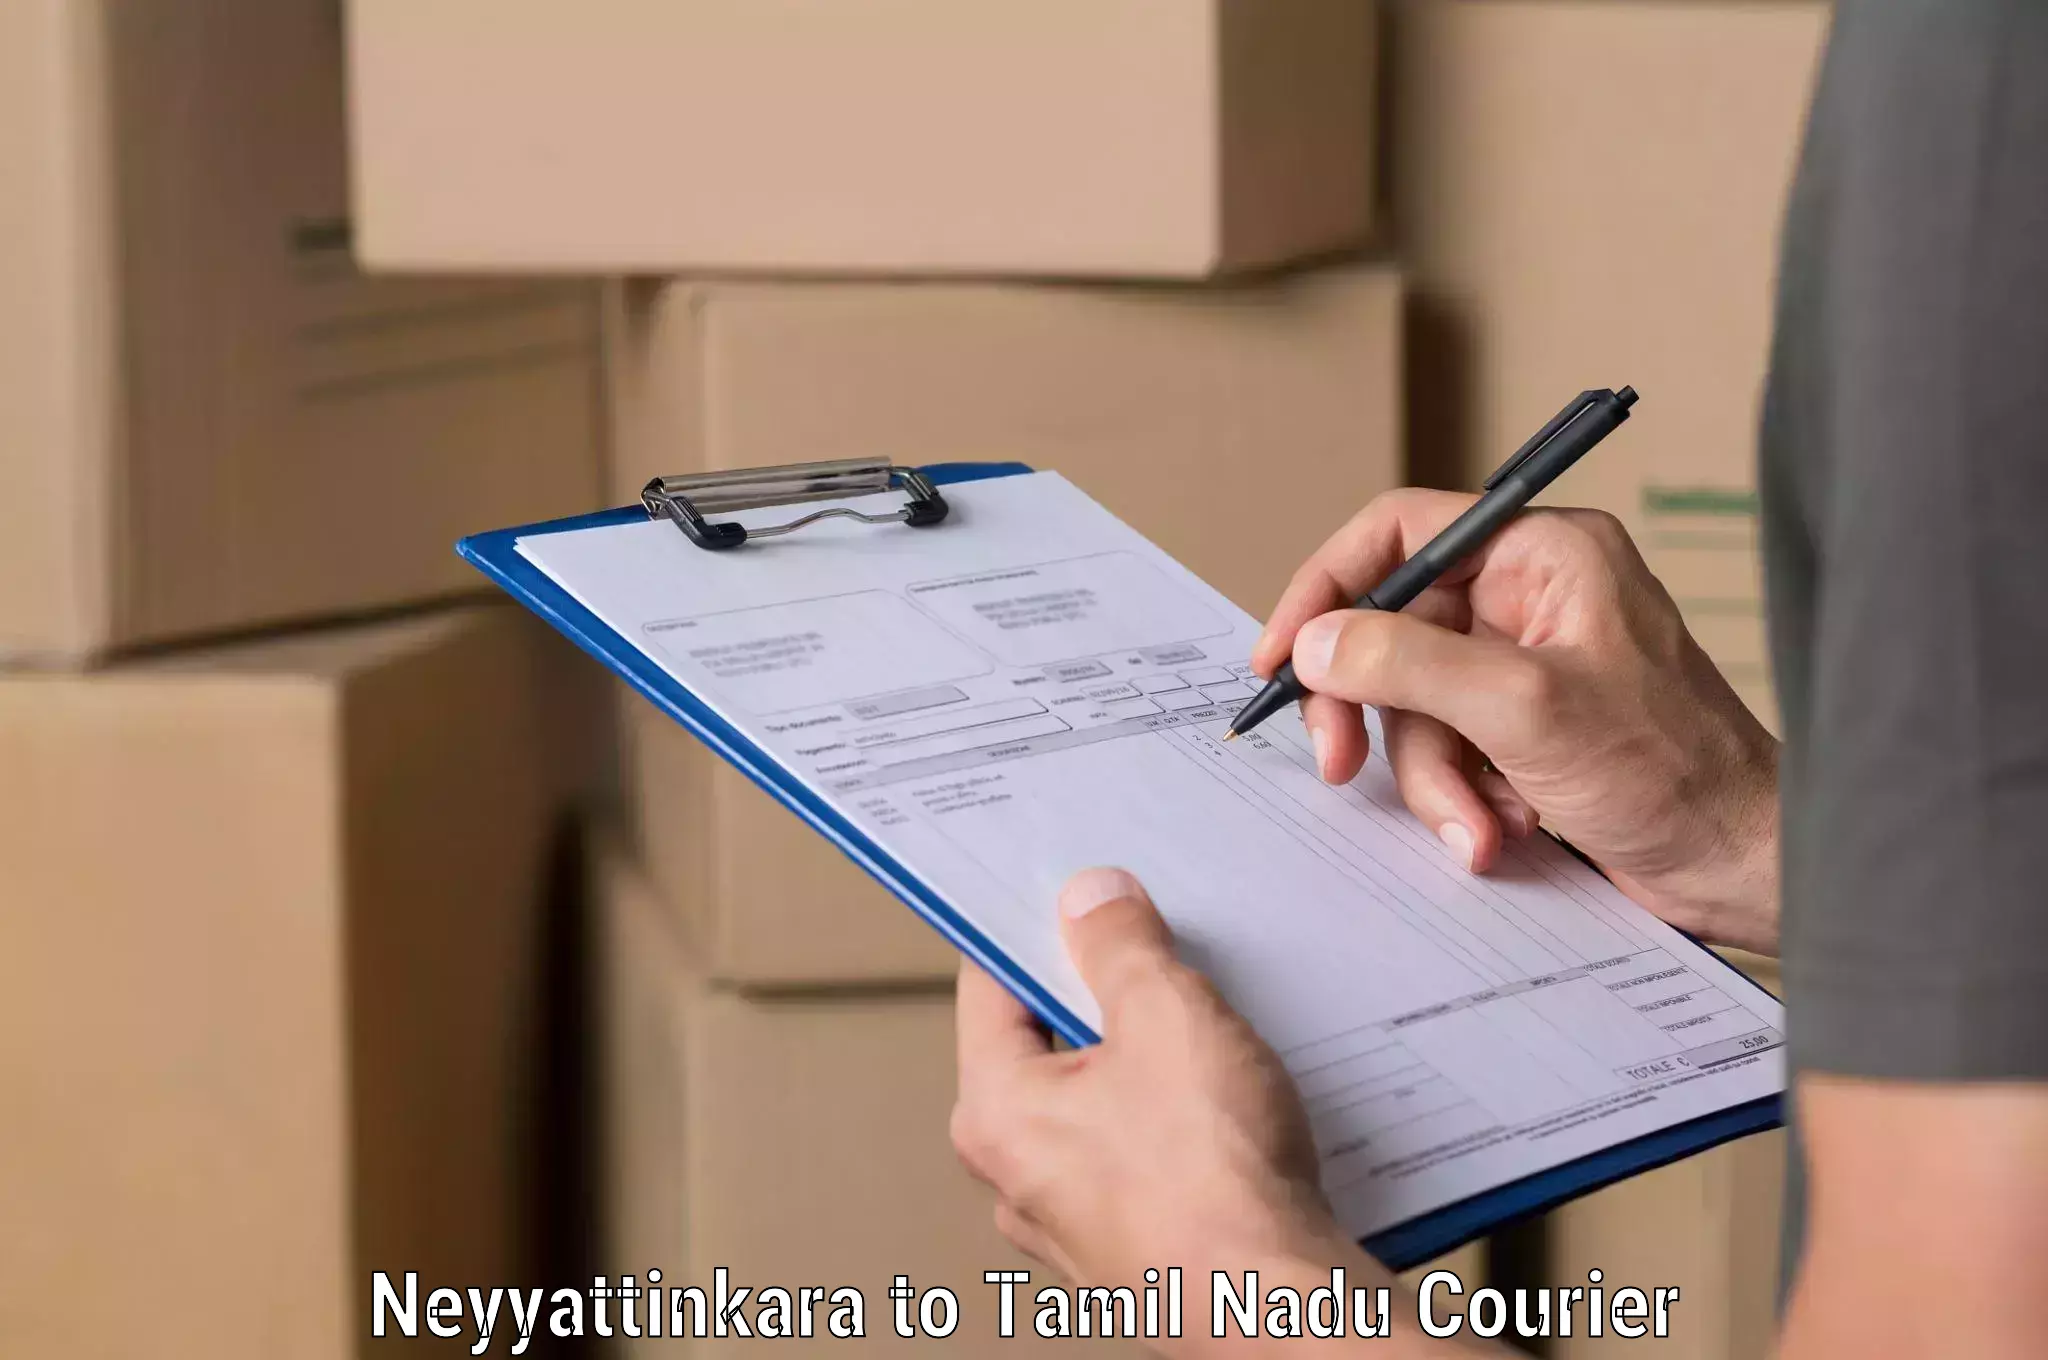 Air courier services Neyyattinkara to Tamil Nadu